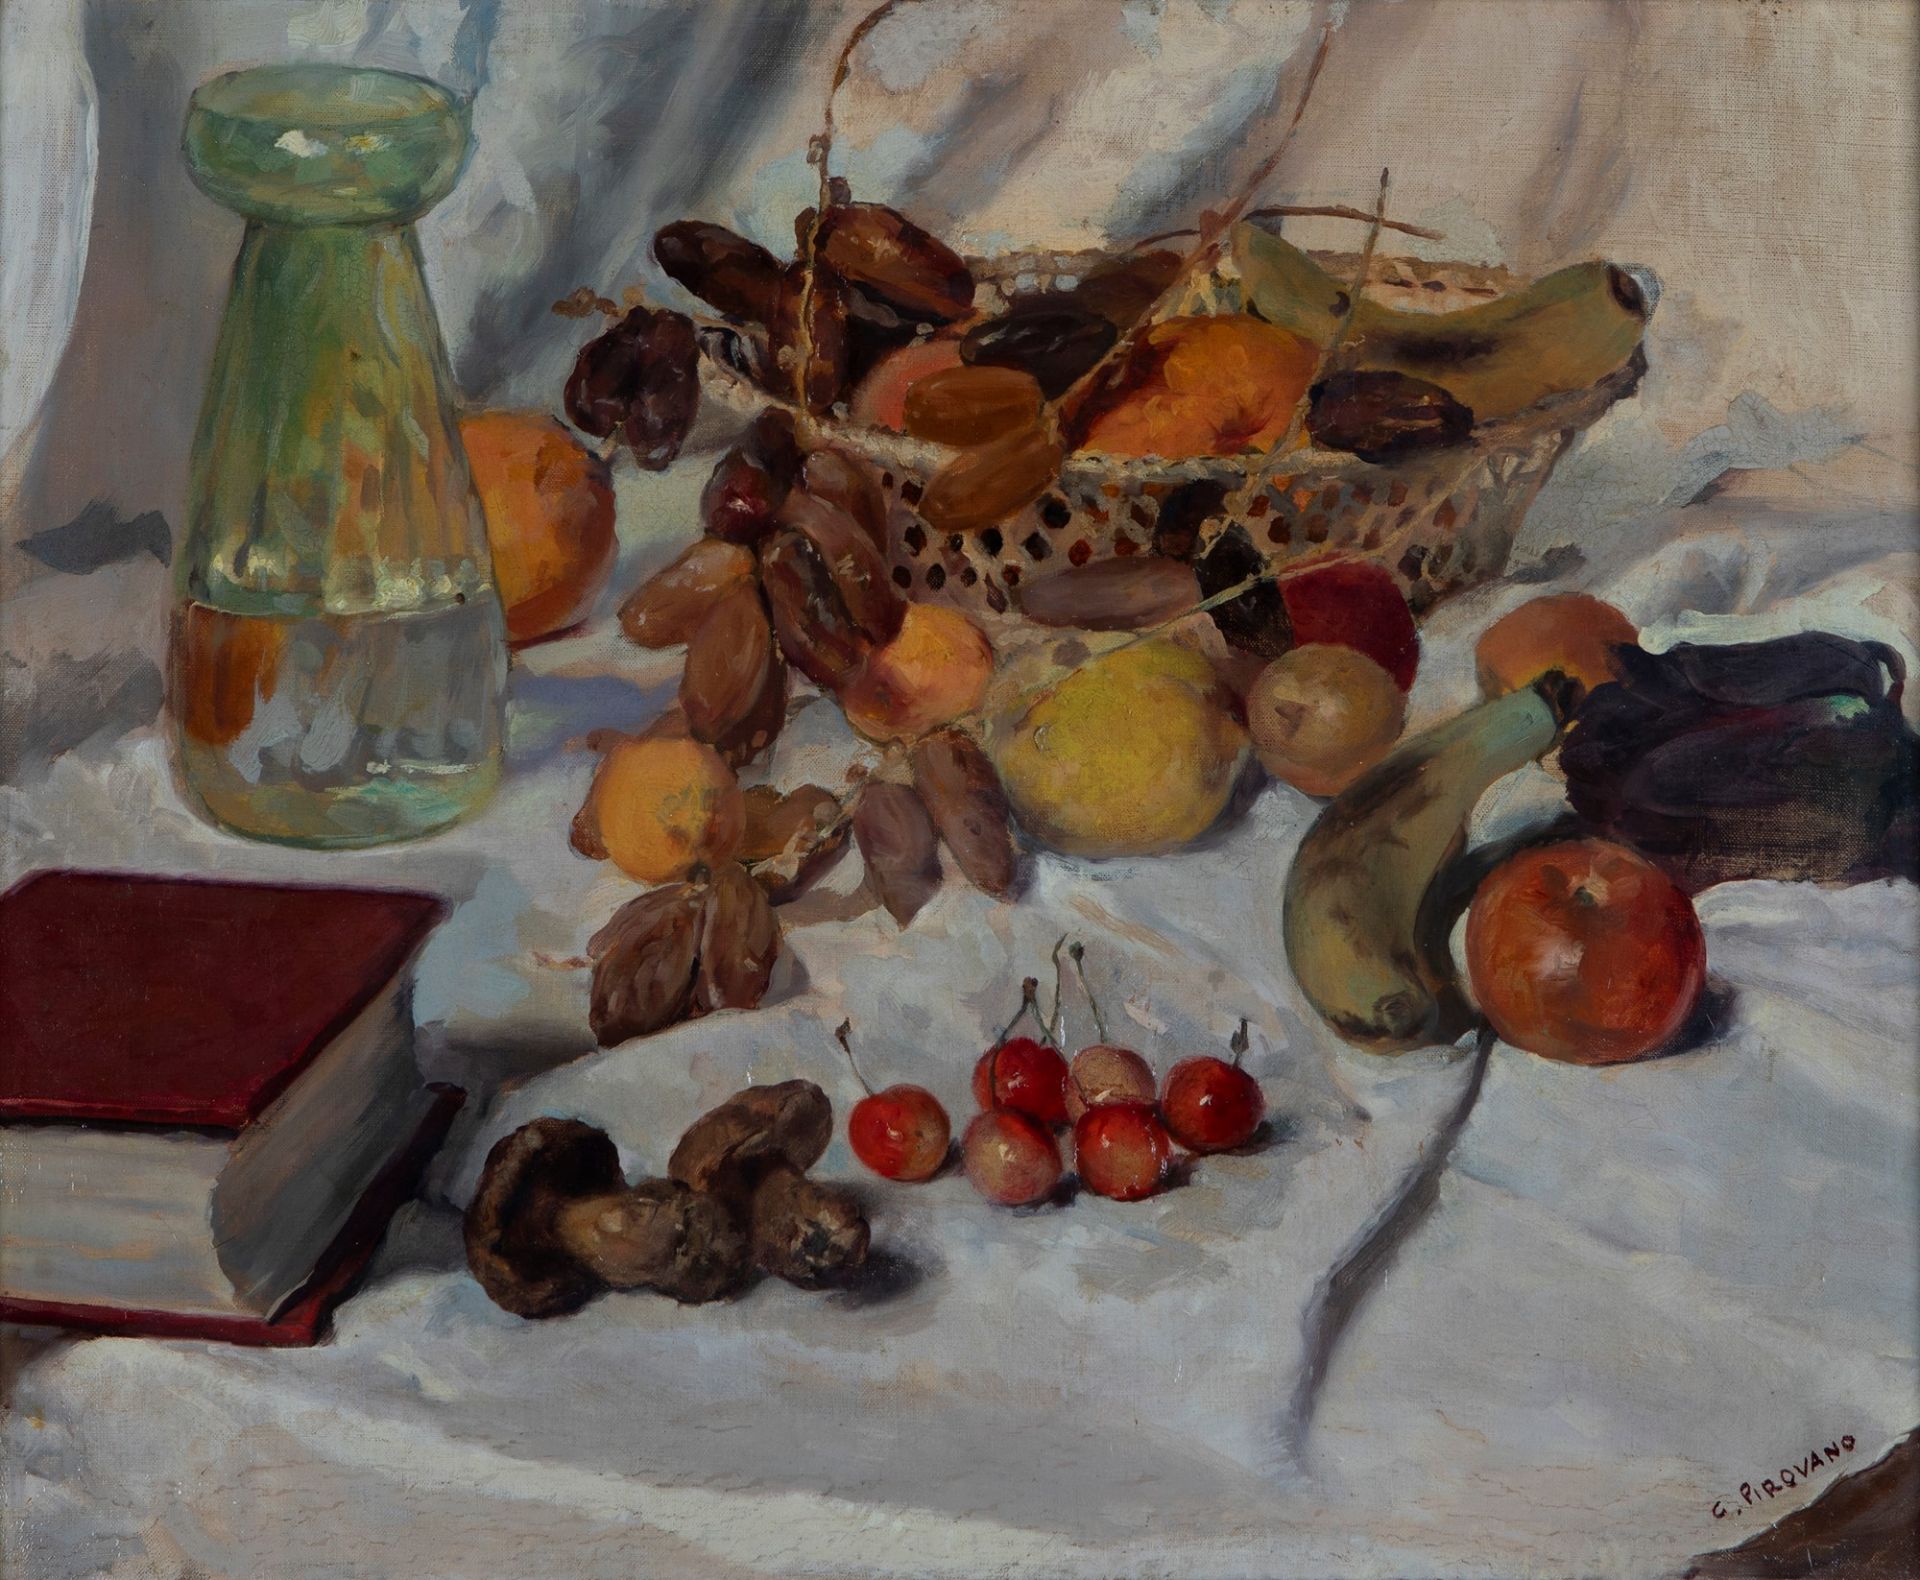 Giovanni Pirovano (Renate 1880-Milano 1959) - Autumn still life